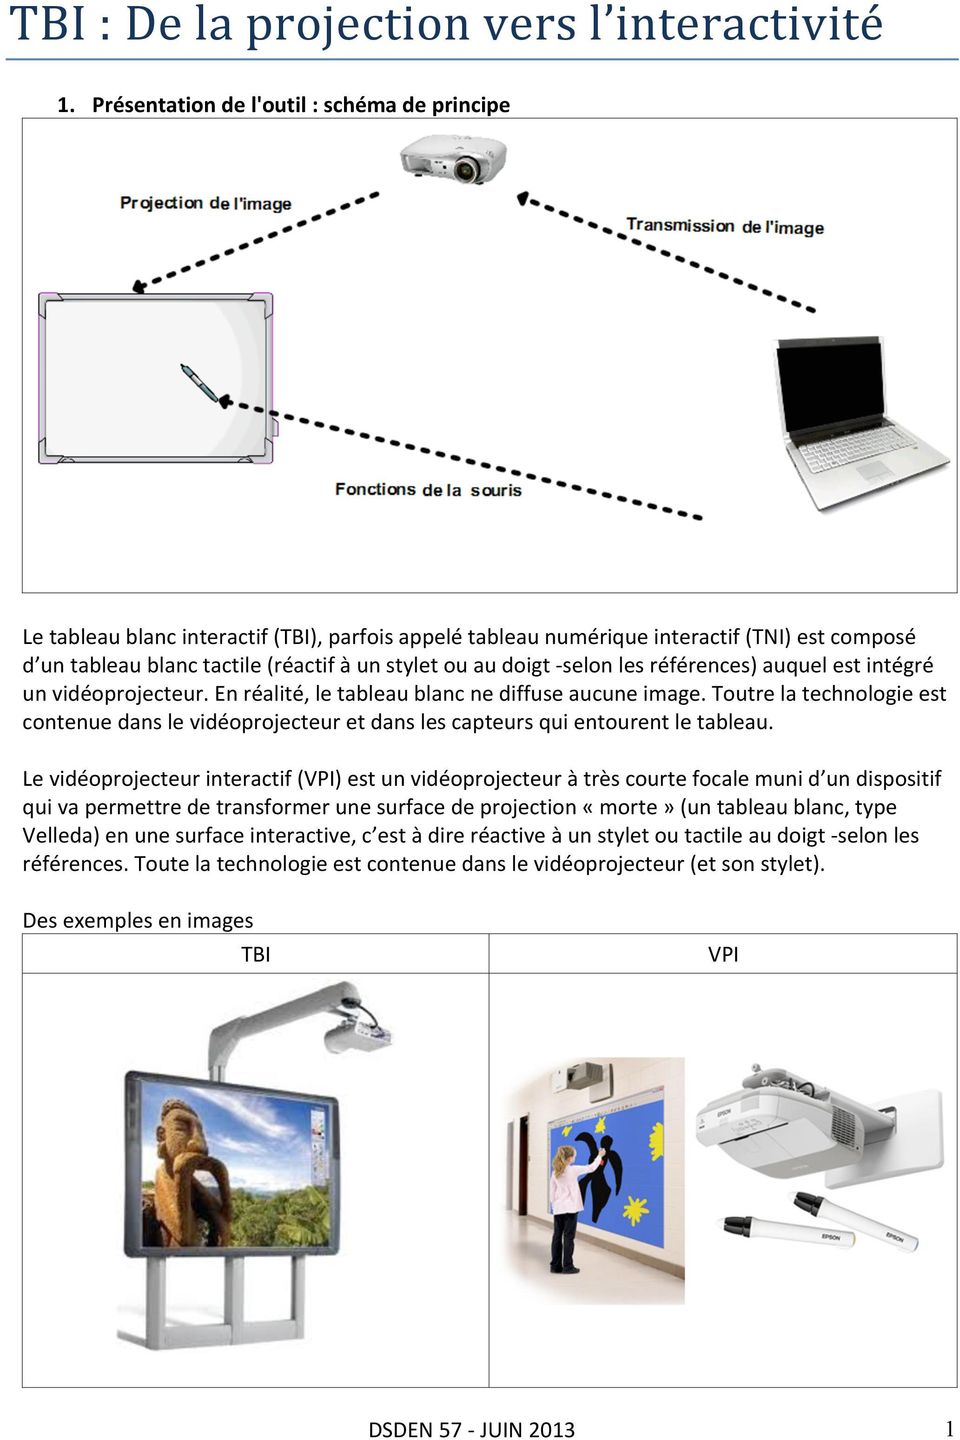 doigt - selon les références) auquel est intégré un vidéoprojecteur. En réalité, le tableau blanc ne diffuse aucune image.